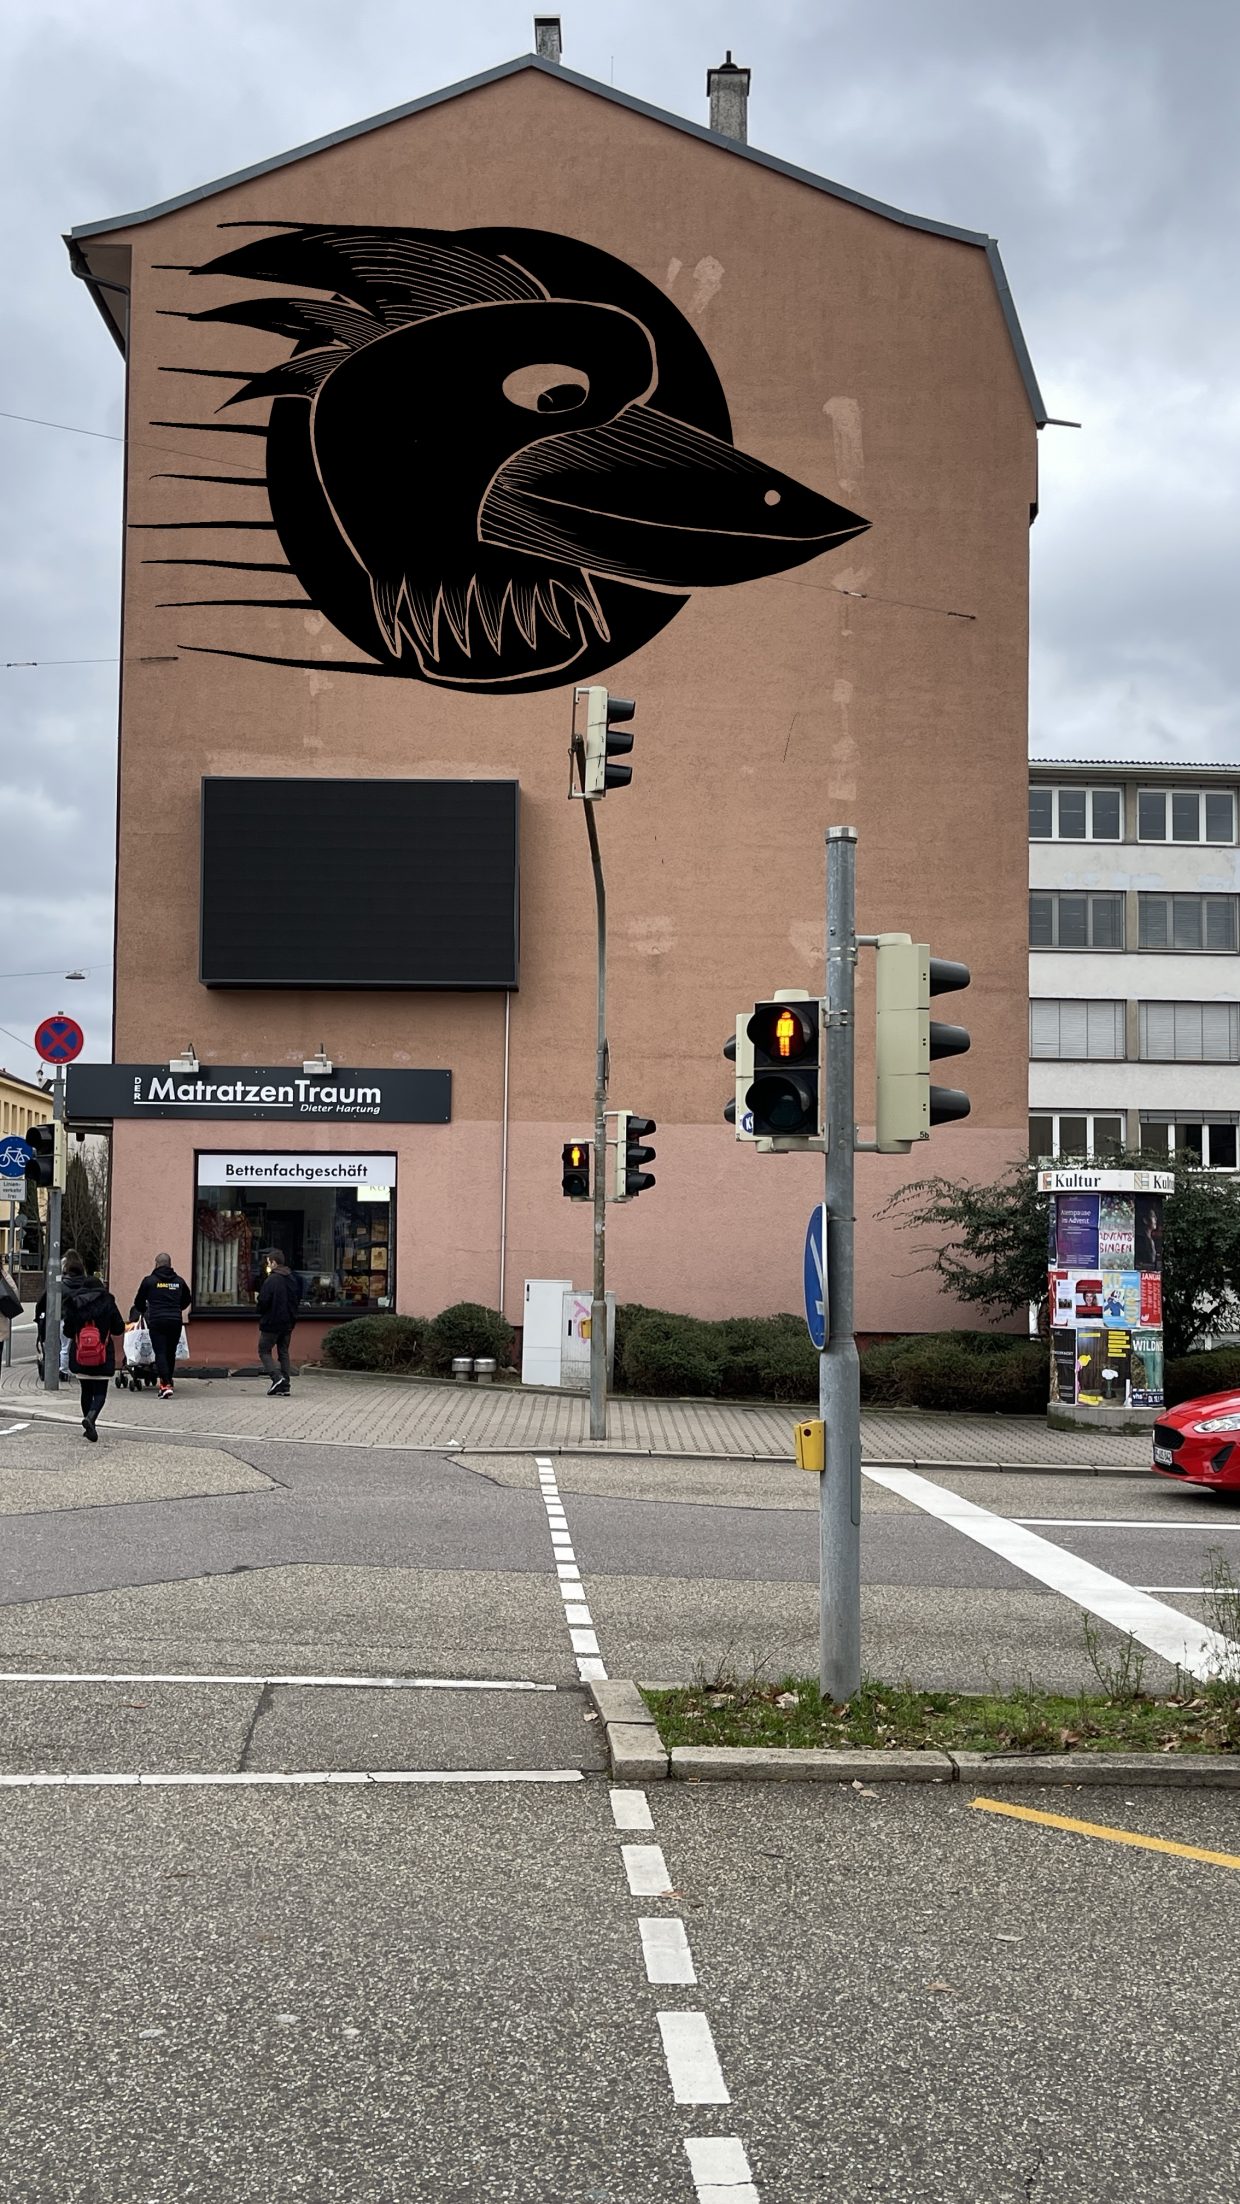 Deimling Straße in Pforzheim, an der Kreuzung ist die Außenwand eines Hauses zu sehen, dass ein Graffiti zeigt